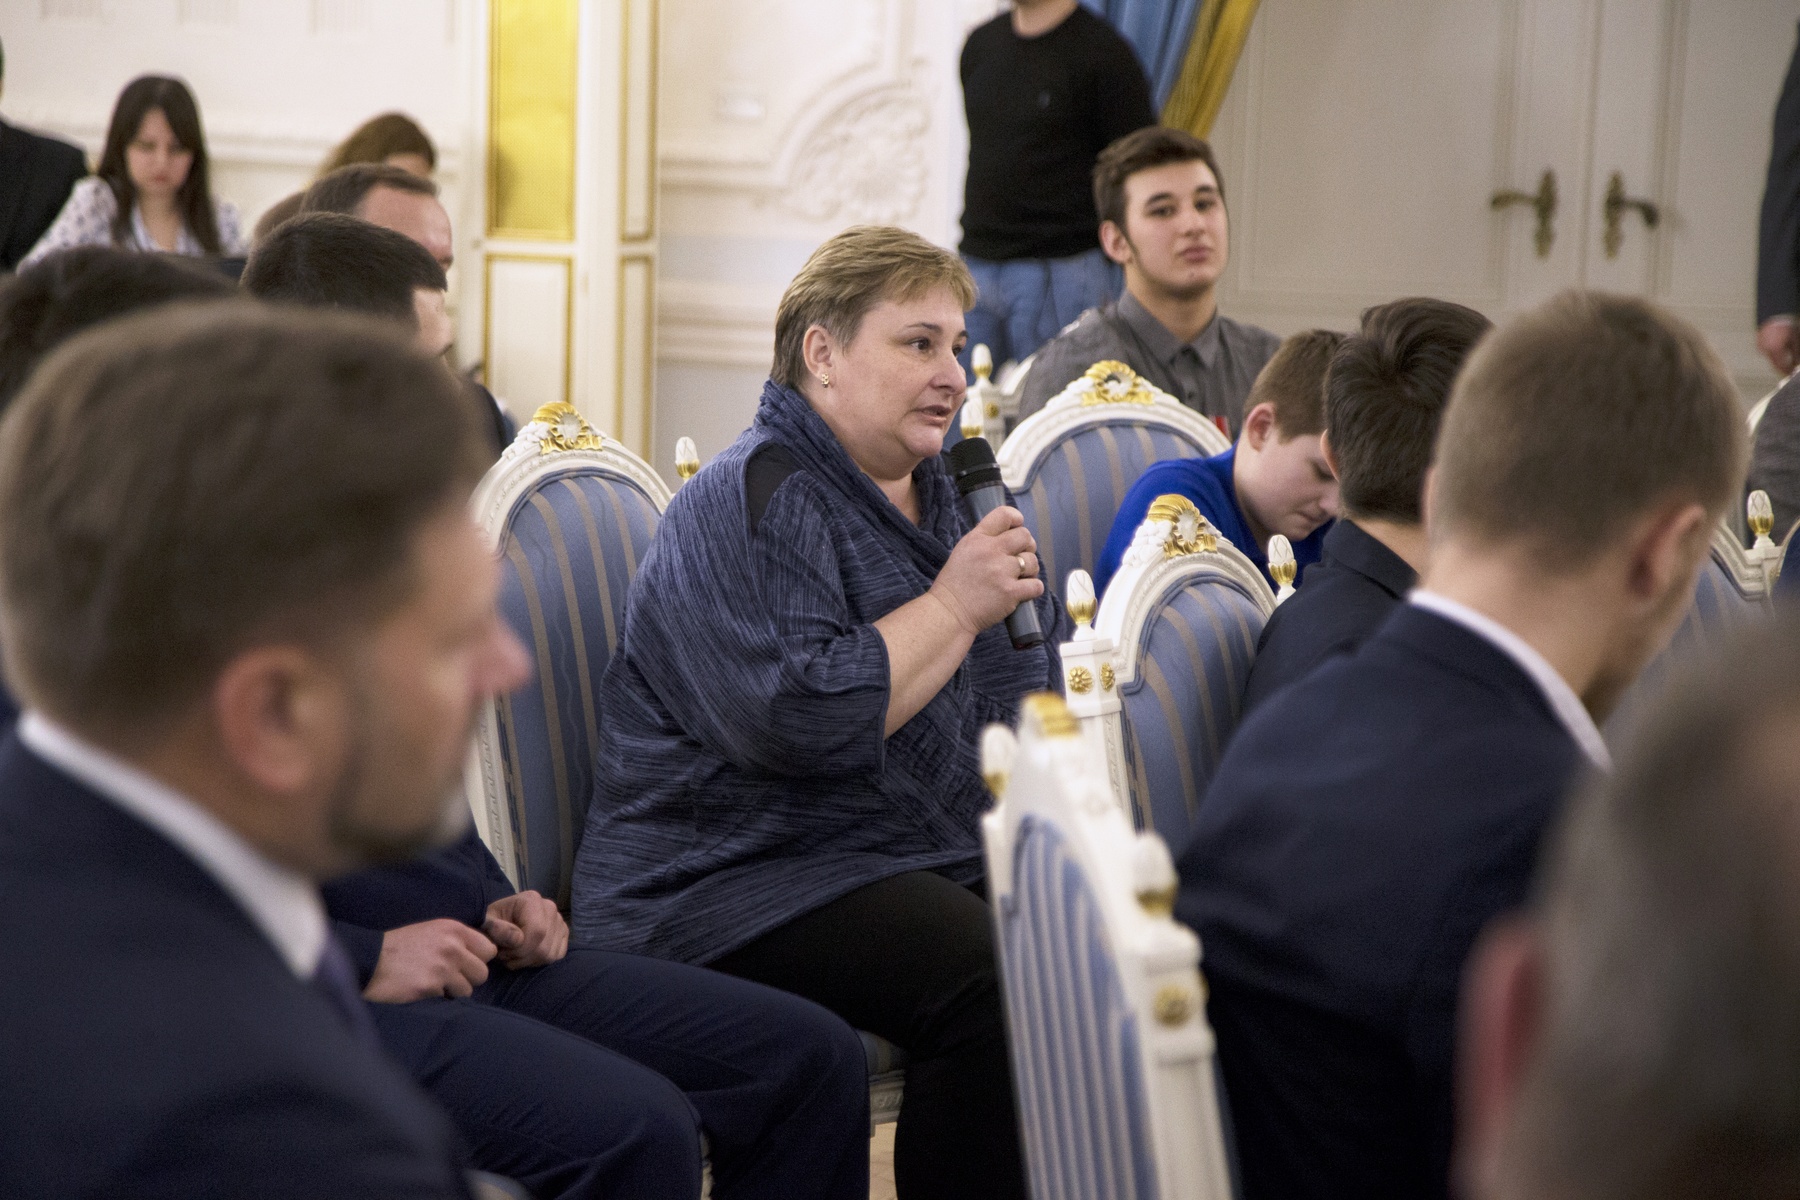    Дмитрий Медведев встретился с детьми-героями, волонтерами-спасателями, активистами МГЕР и представителями «Боевого братства»